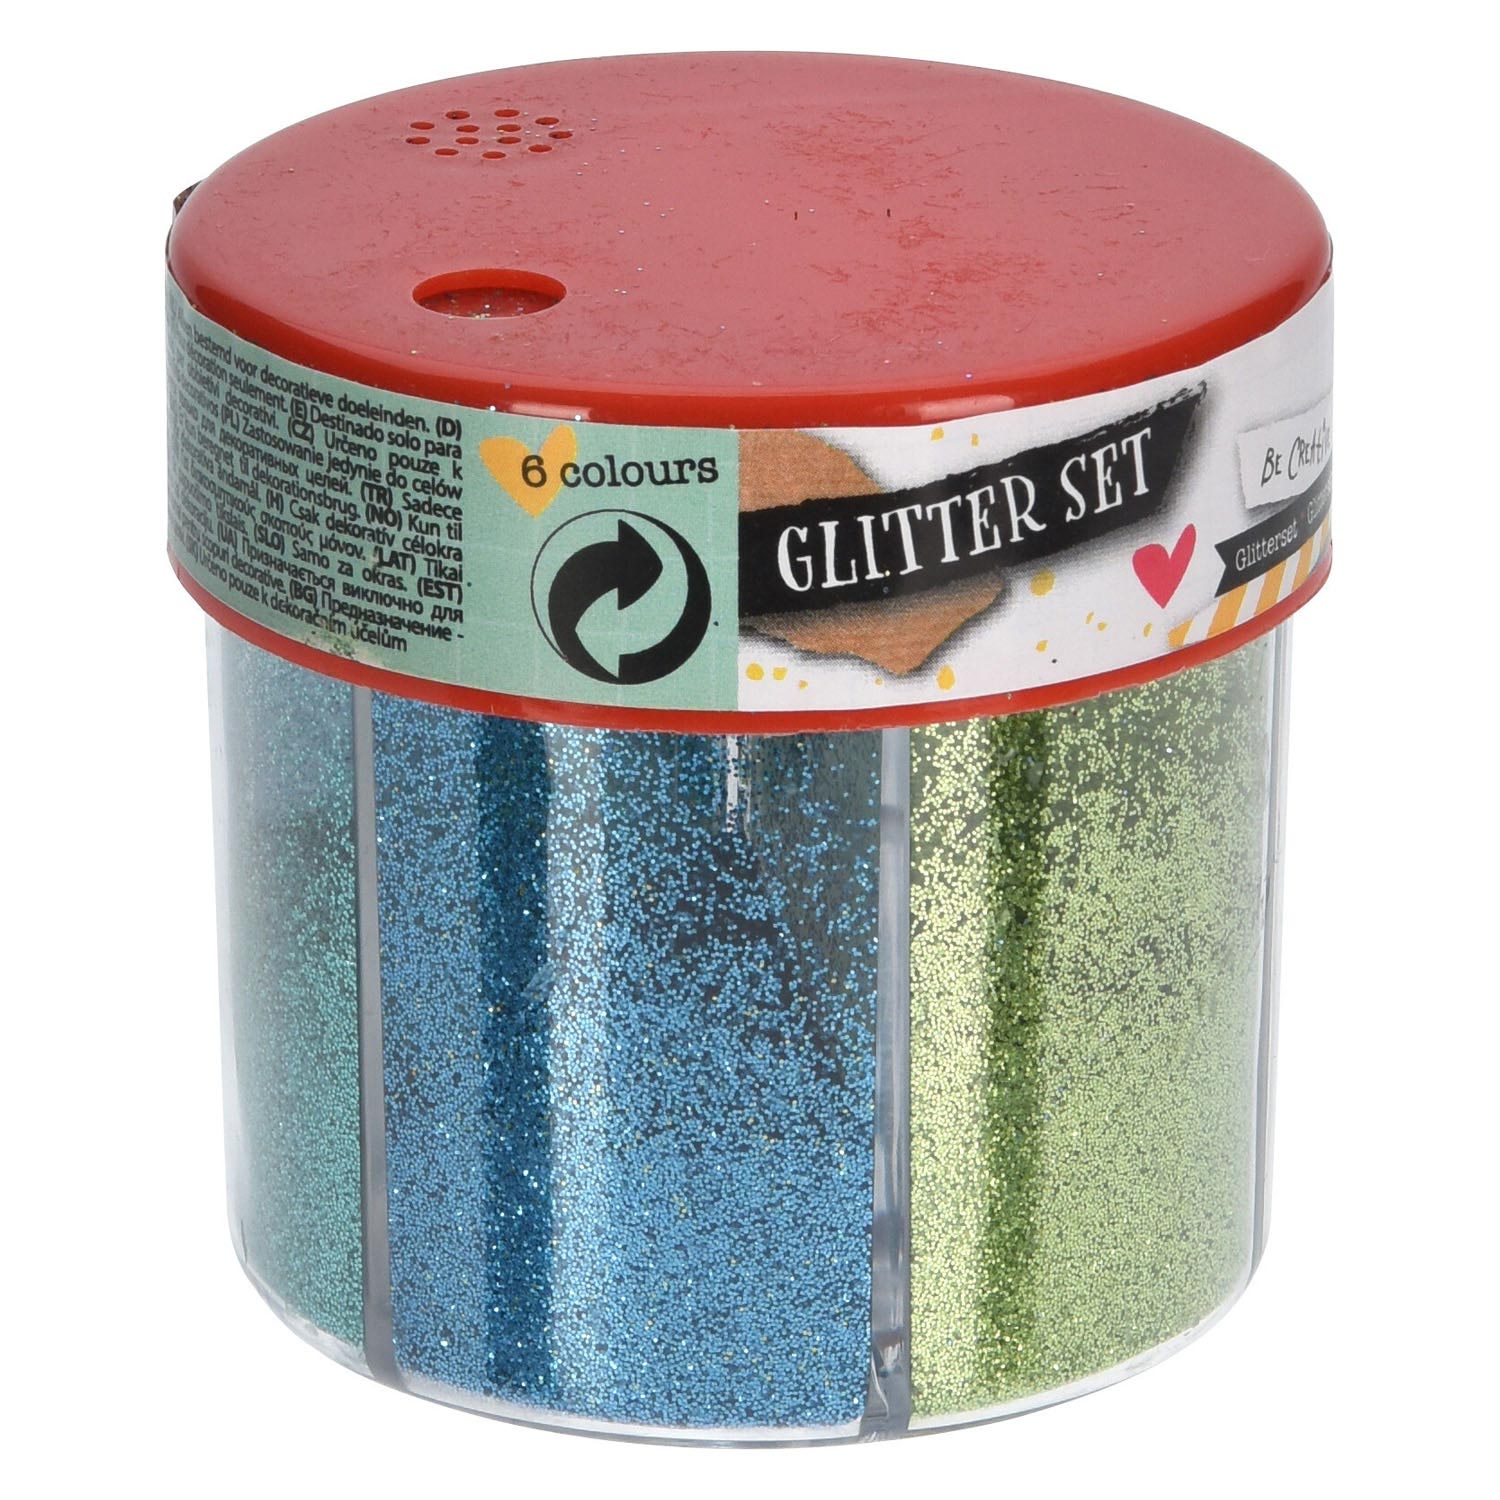 kant Voorgevoel Onbemand Glitter Set, 6 kleuren online kopen? | Lobbes Speelgoed België